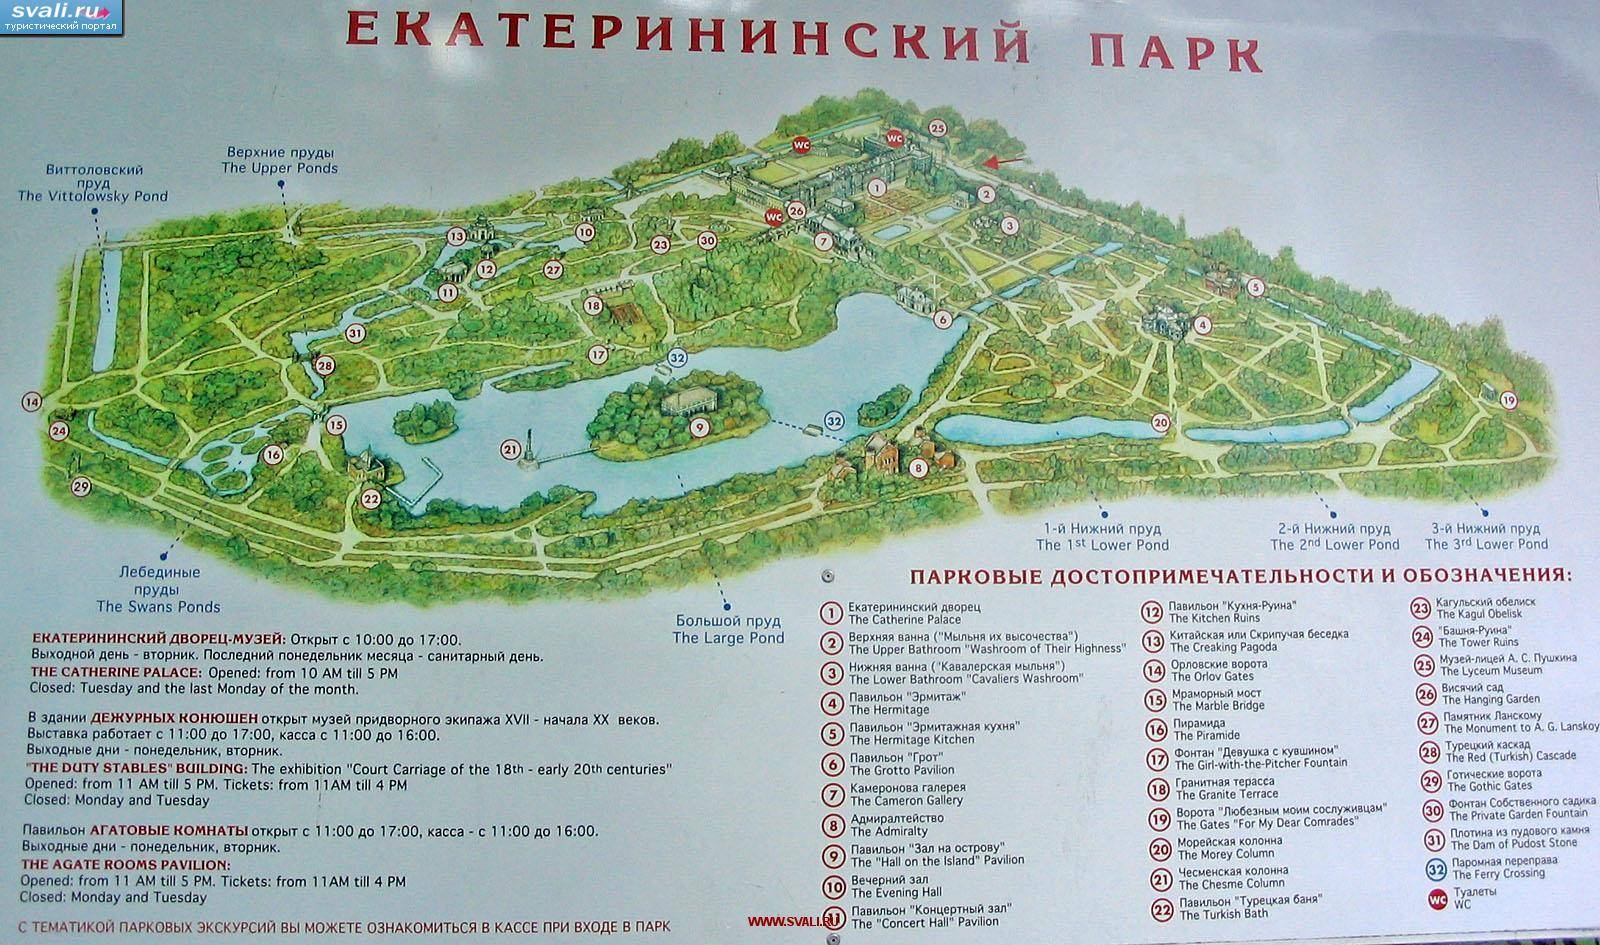 Адреса петербурга | таврический сад